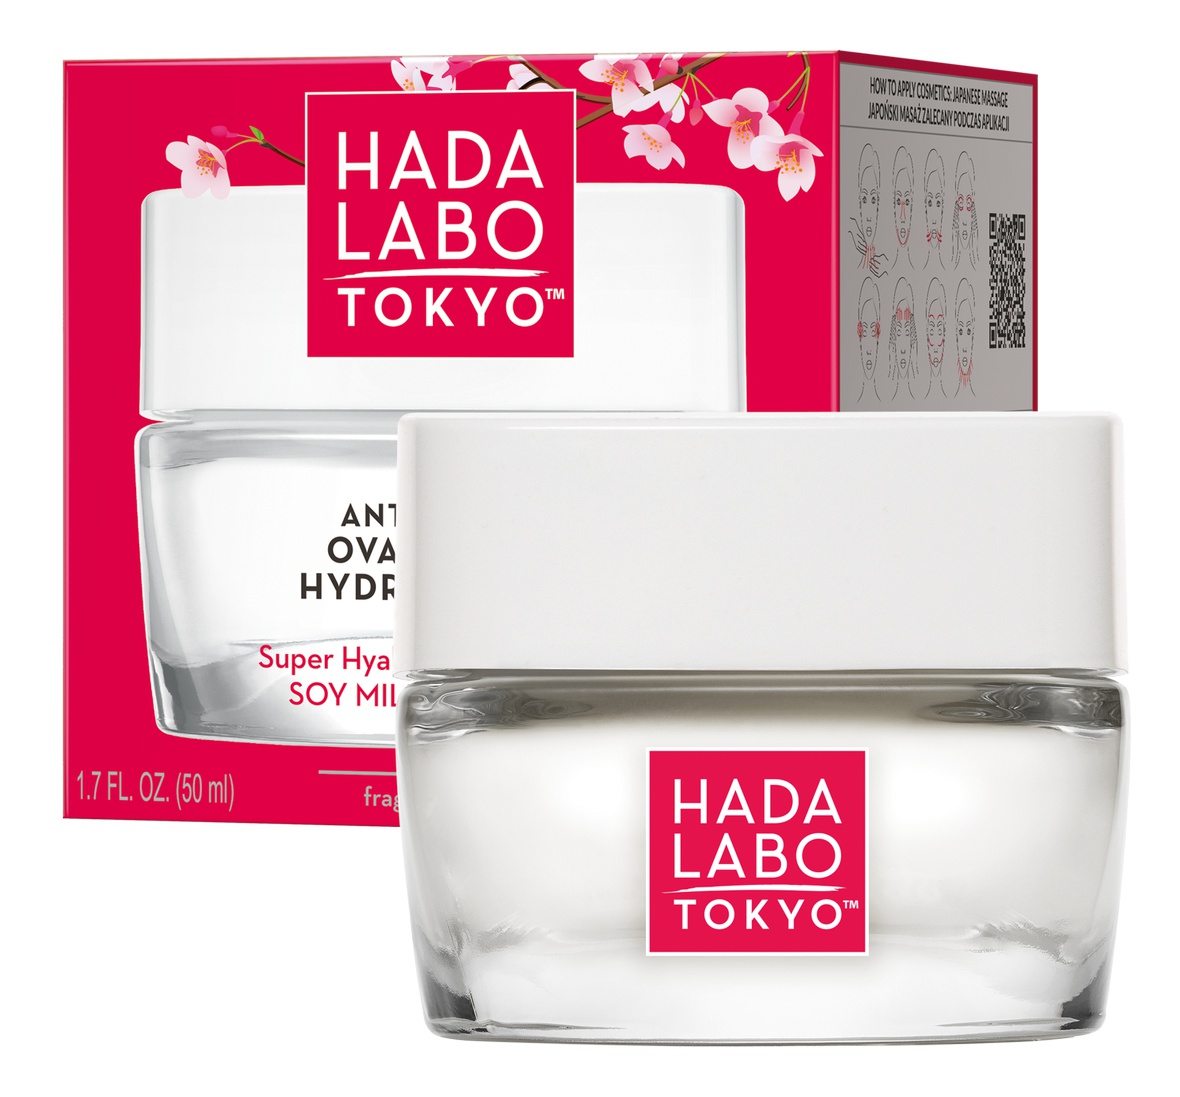 Hada Labo Anti-aging Oval V Lift Hidro Cream